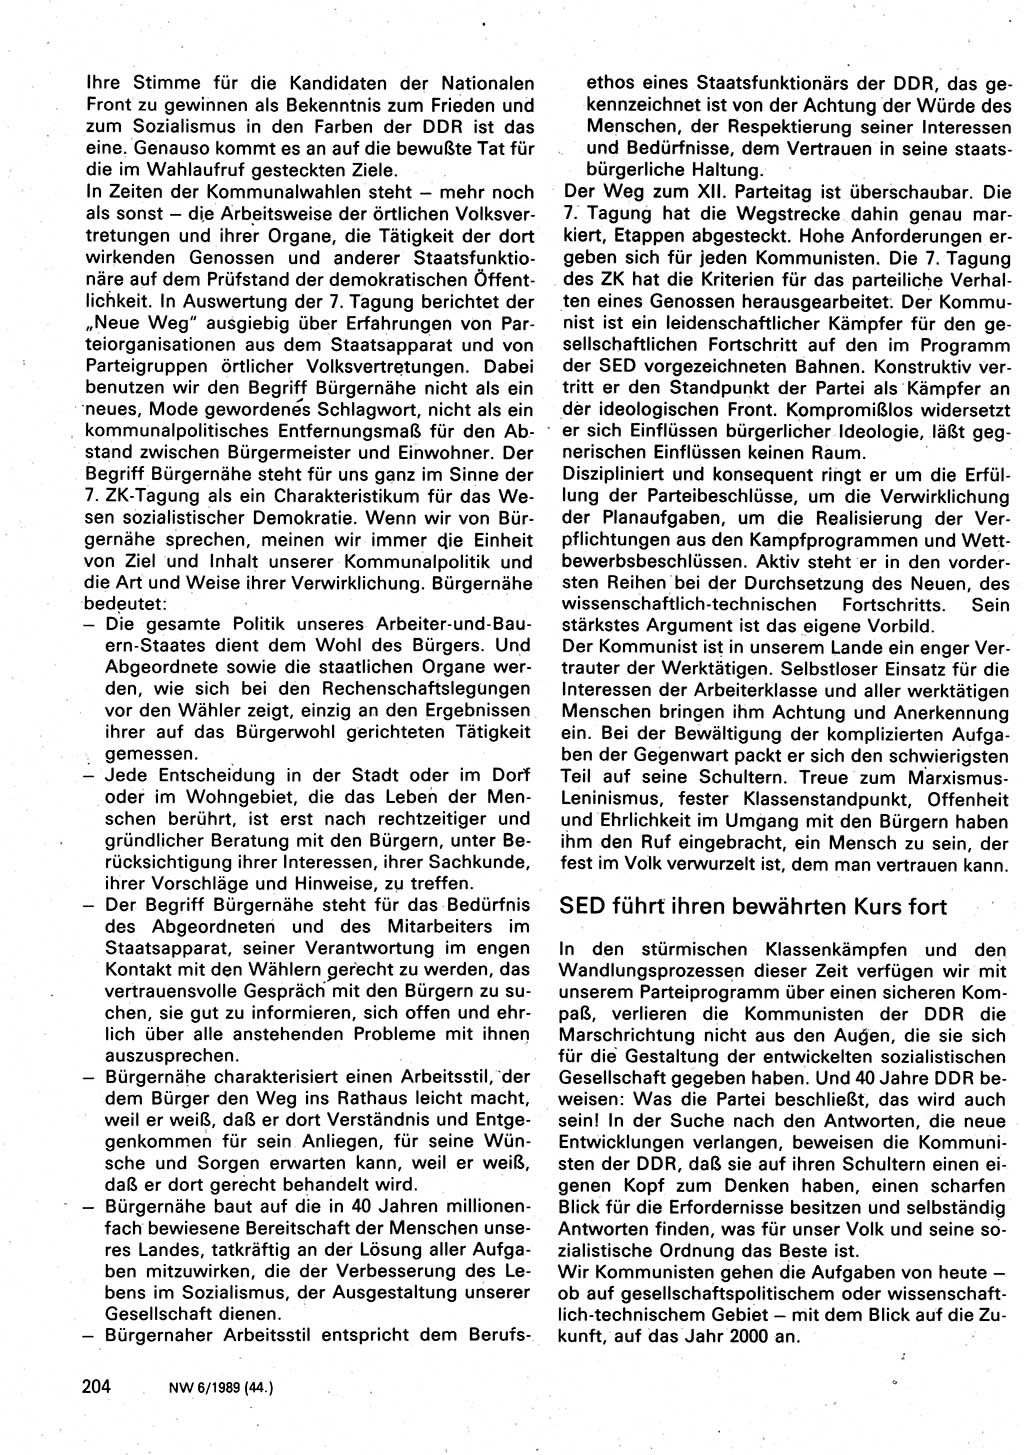 Neuer Weg (NW), Organ des Zentralkomitees (ZK) der SED (Sozialistische Einheitspartei Deutschlands) für Fragen des Parteilebens, 44. Jahrgang [Deutsche Demokratische Republik (DDR)] 1989, Seite 204 (NW ZK SED DDR 1989, S. 204)